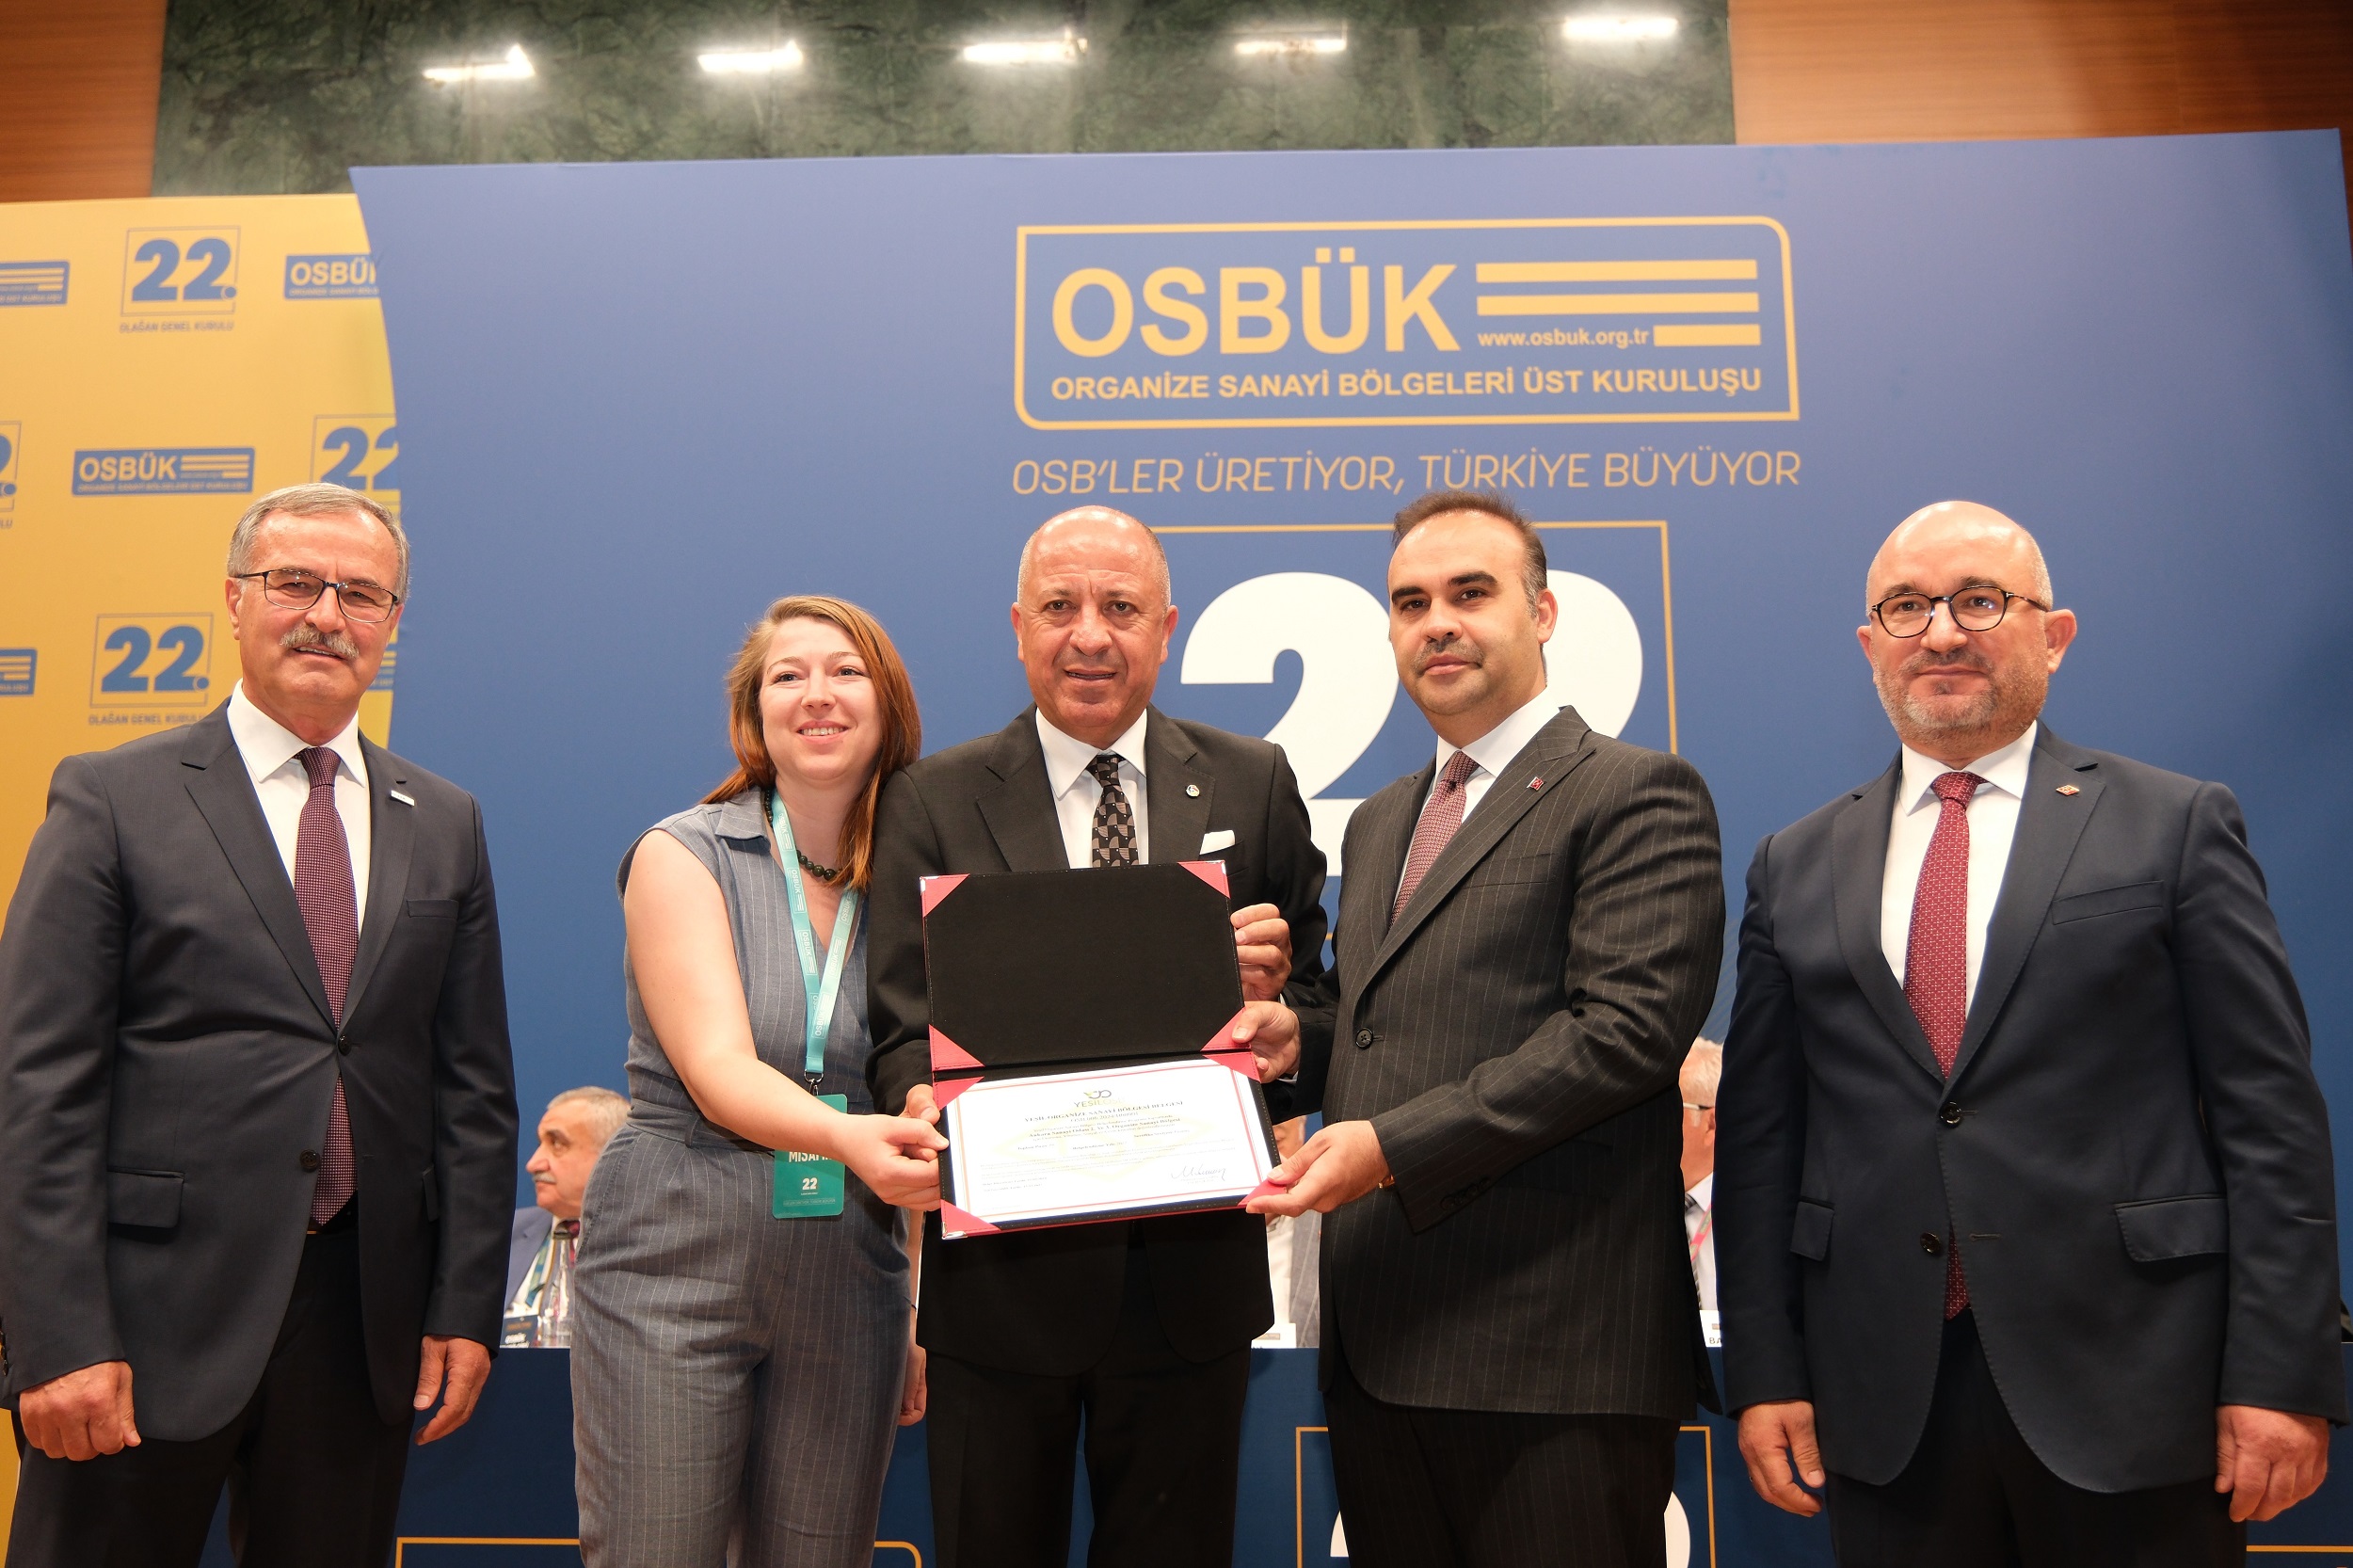 ASO 2. OSB, Yeşil Organize Sanayi Bölgesi belgesi almaya hak kazandı